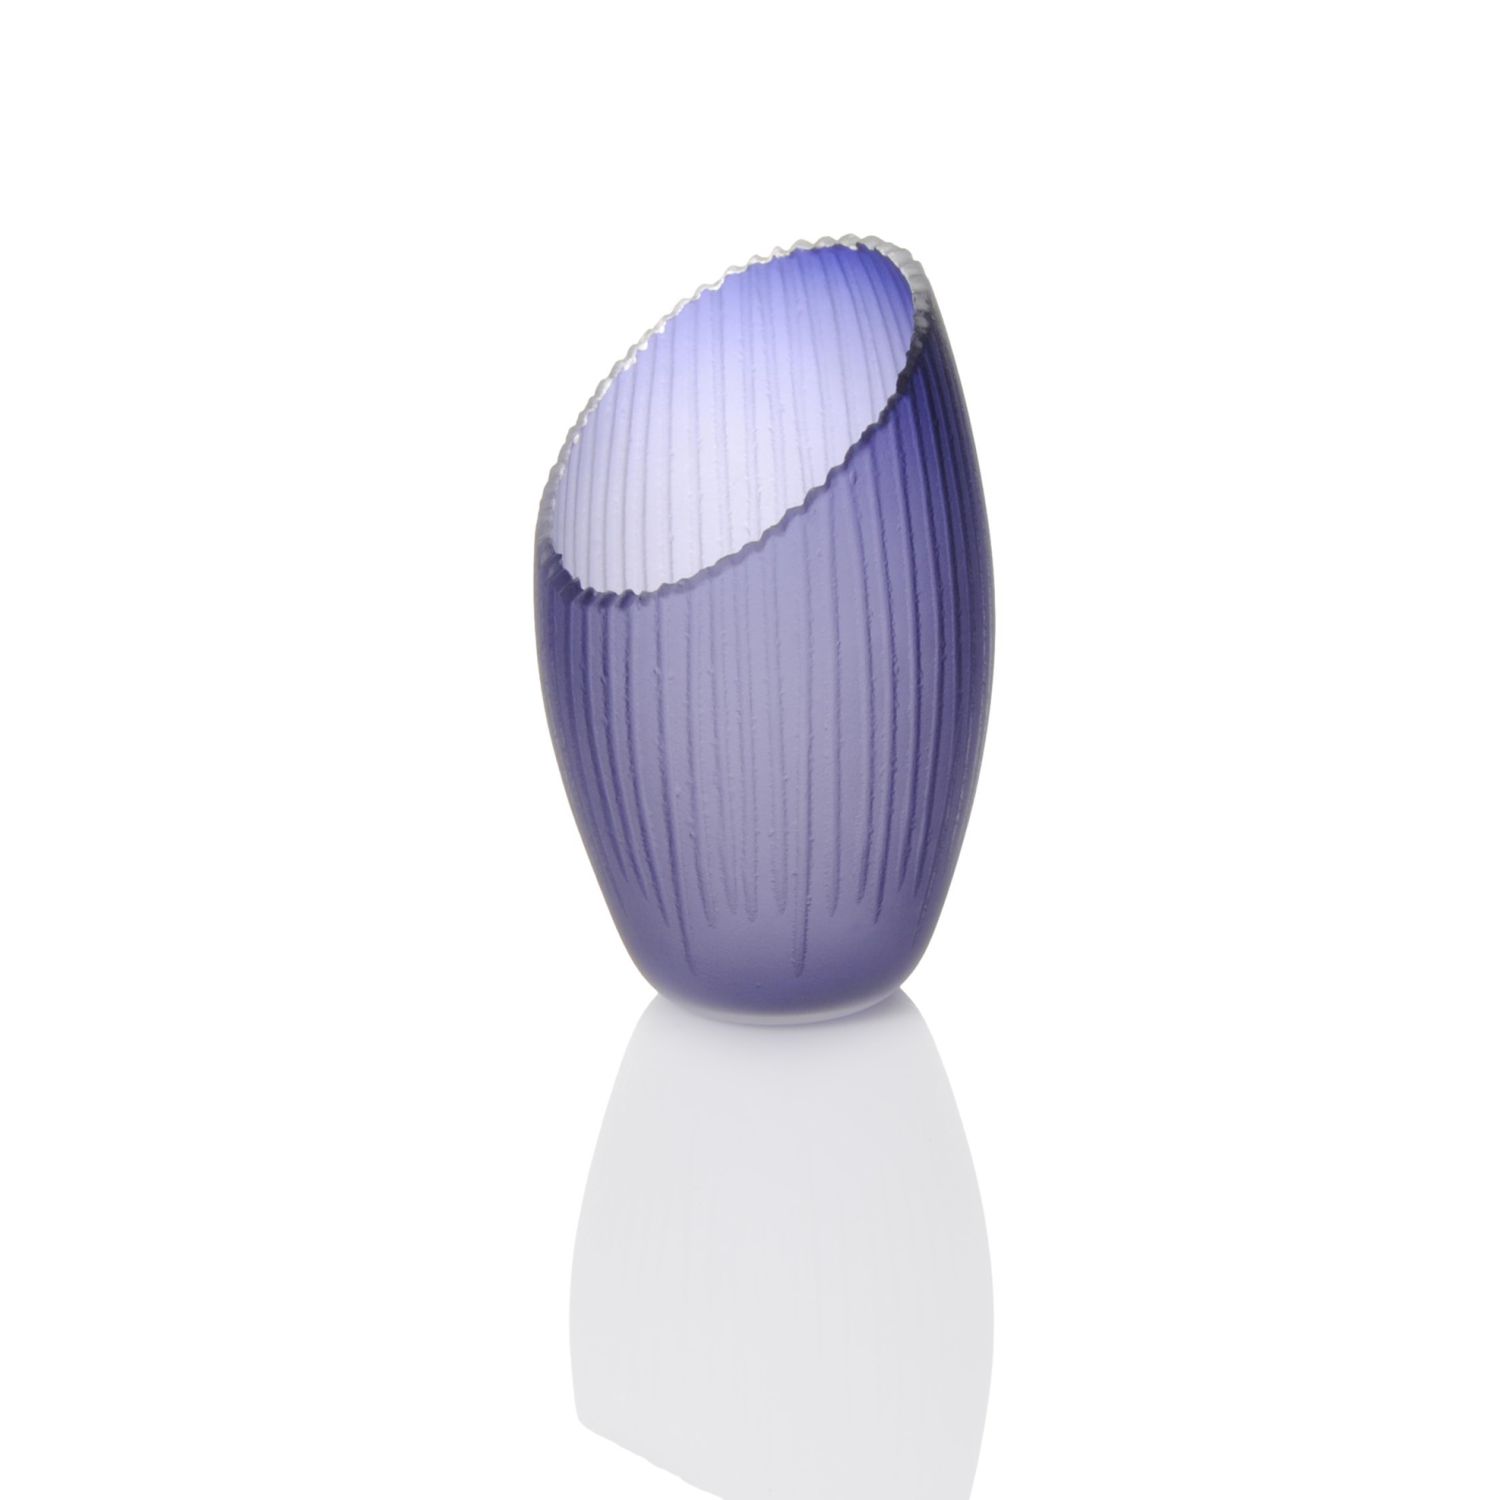 Courtney Downman: Dark Blue Violet Saw Carved Ellipse Vase Product Image 1 of 1